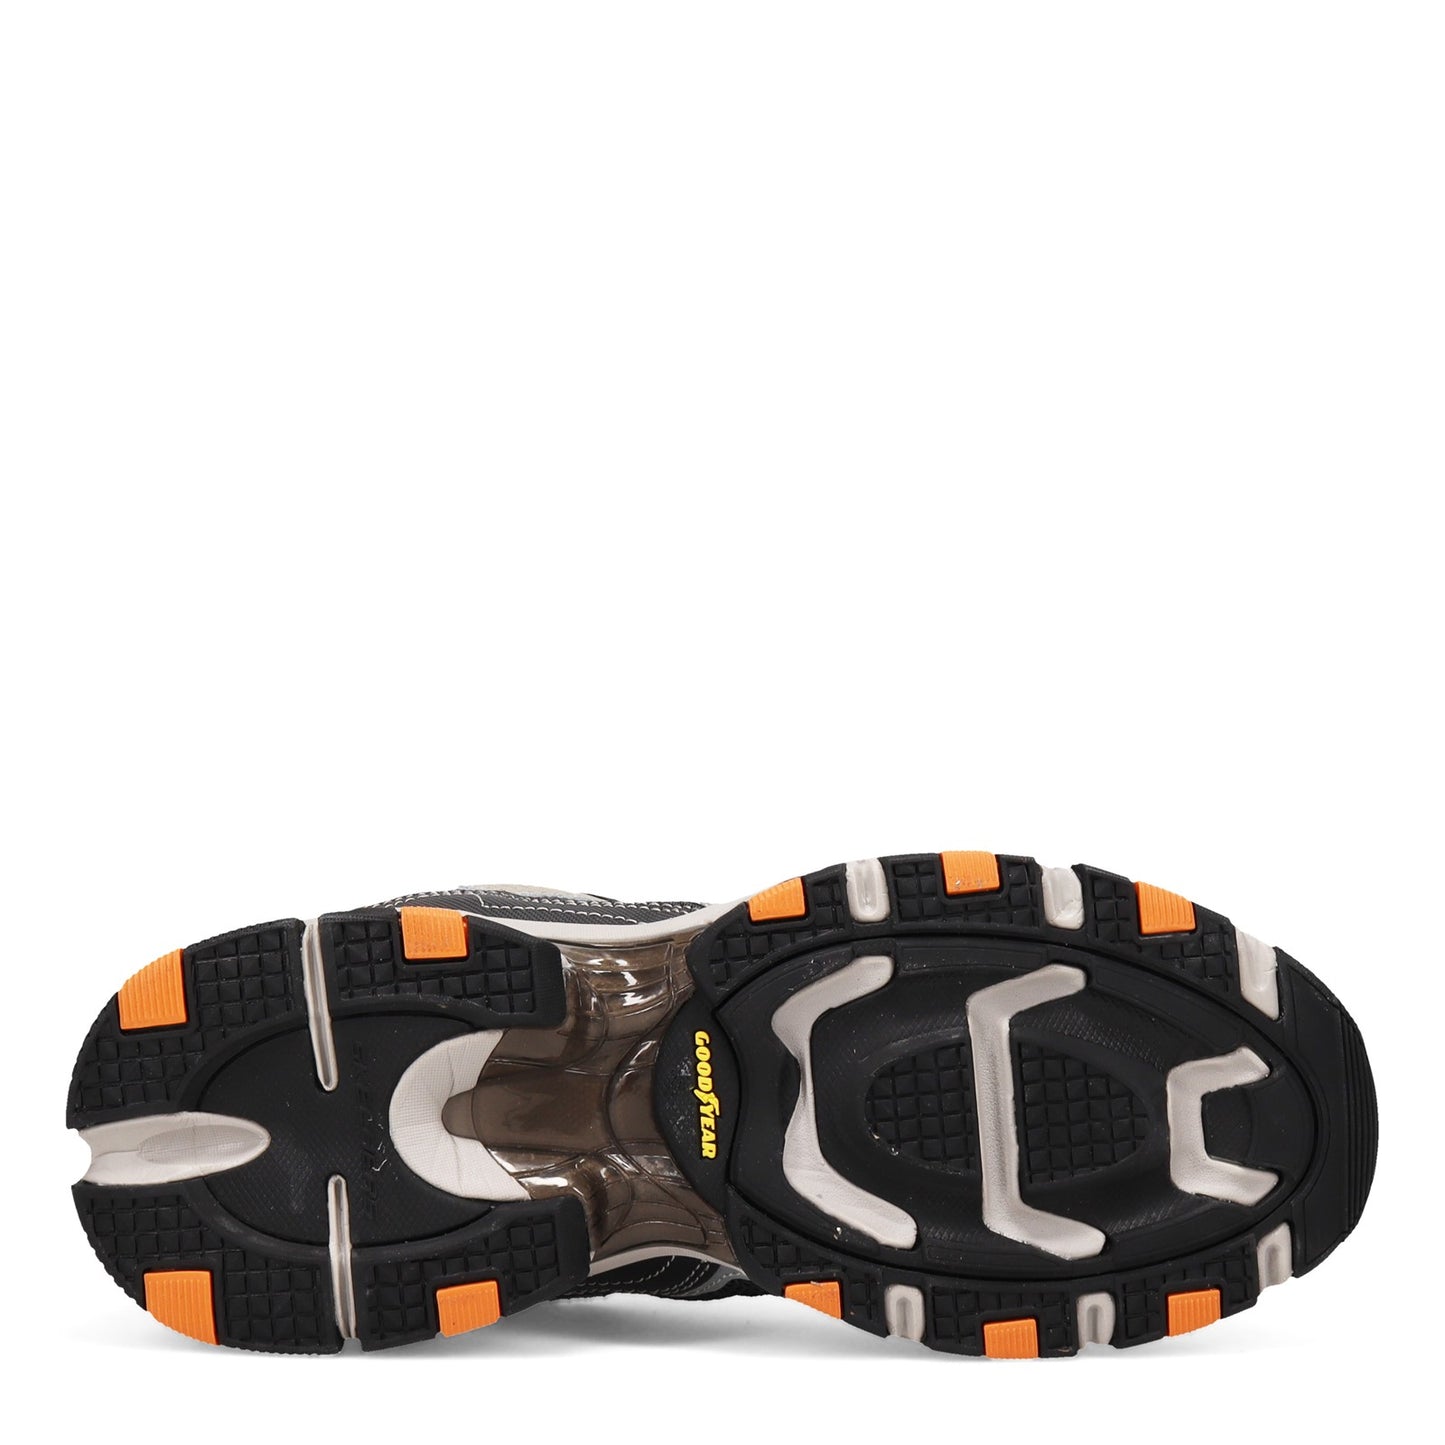 Peltz Shoes  Men's Skechers Vigor 3.0 Sneaker Taupe/Black 237145-TPBK